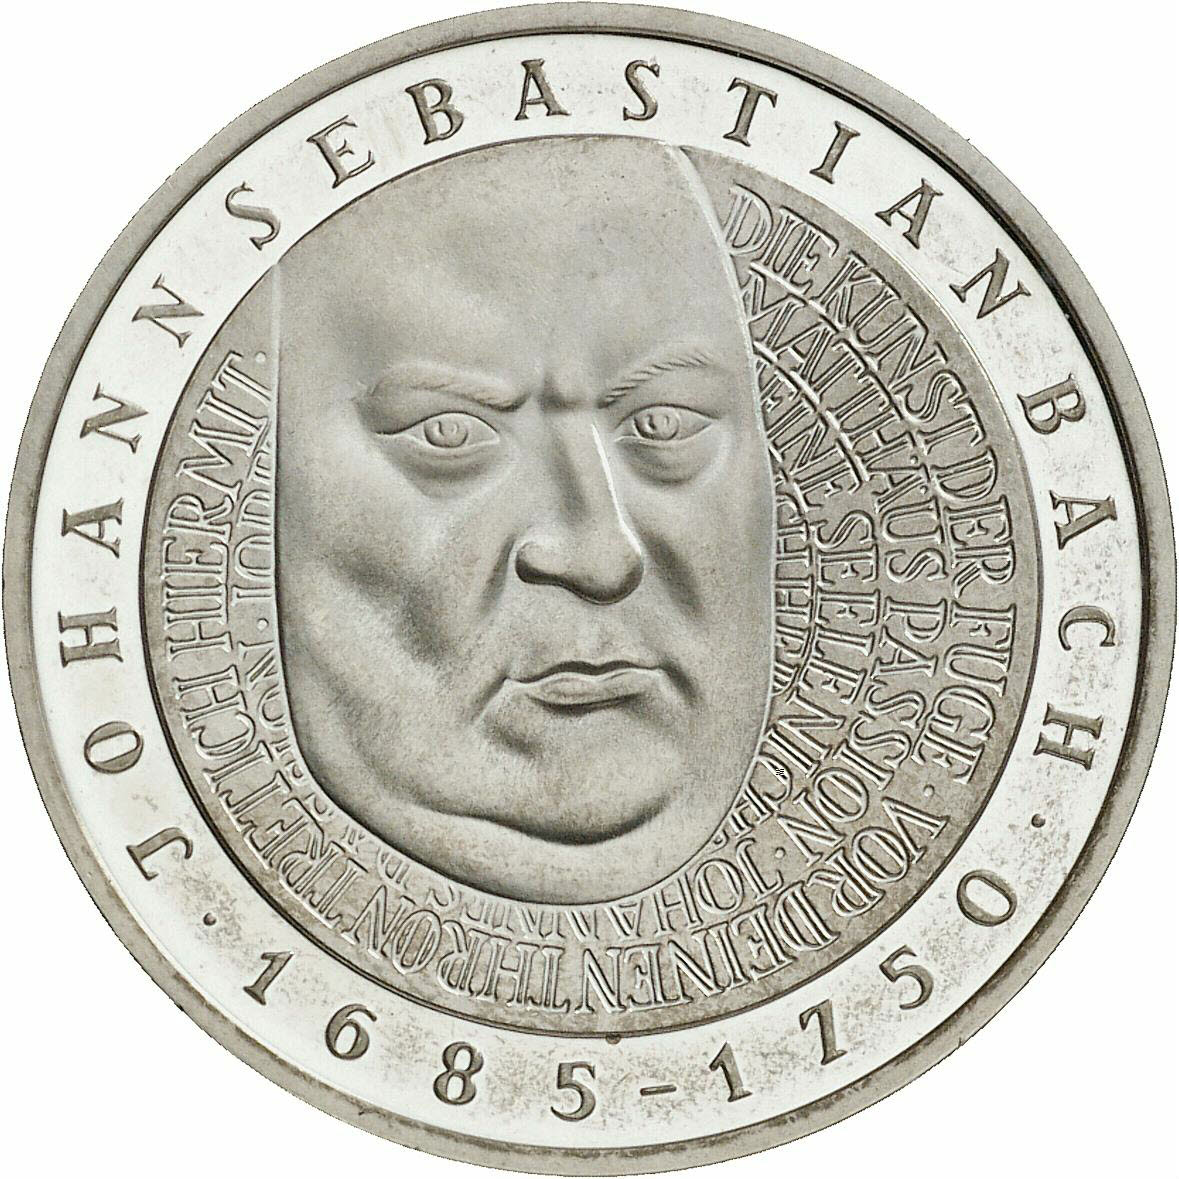 DE 10 Deutsche Mark 2000 F